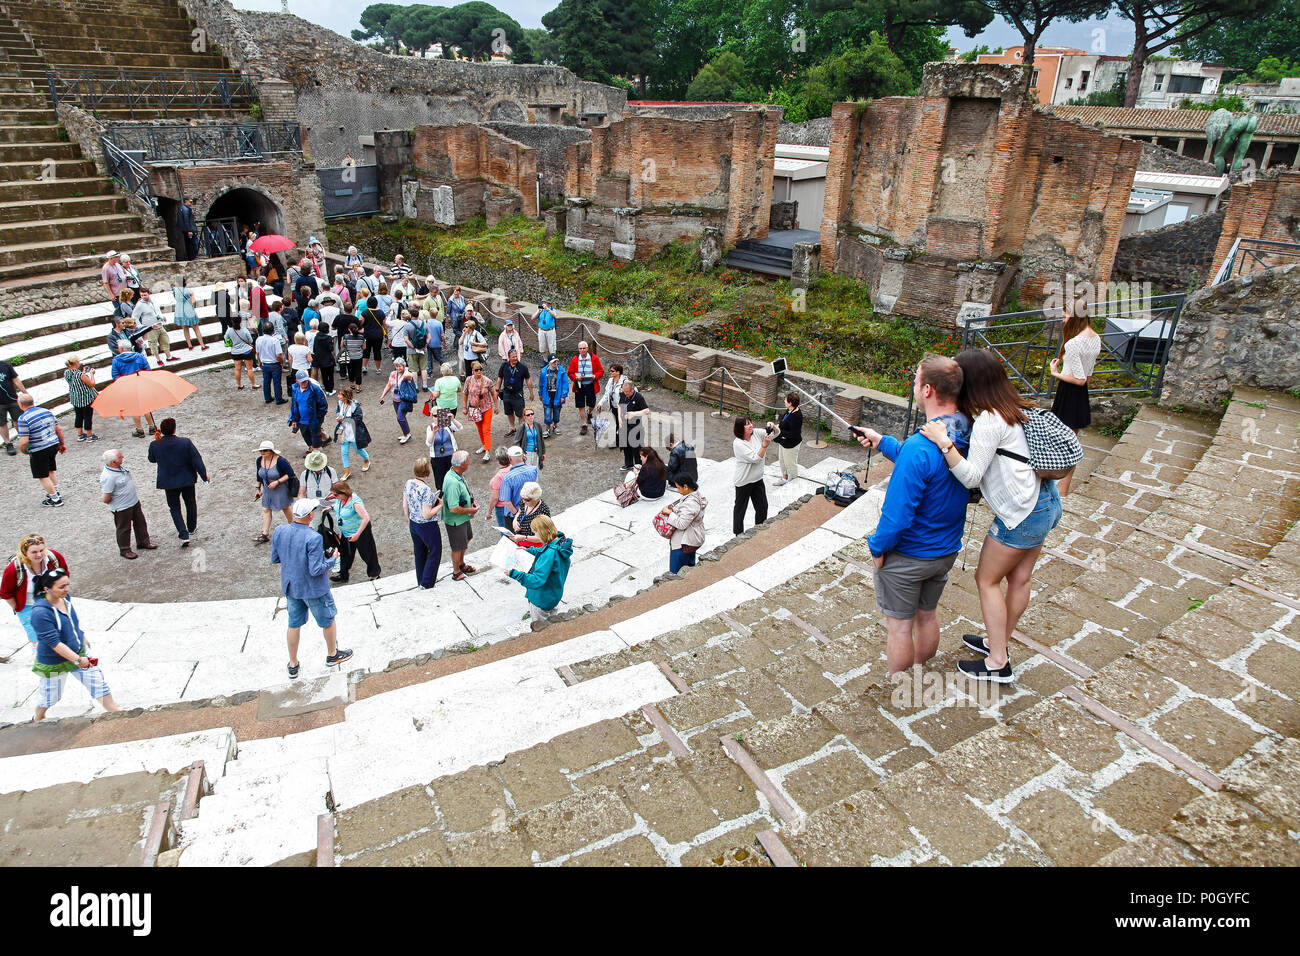 Touristen unter selfies auf einer alten römischen Amphitheater, Pompeji Archäologische Stätte, Pompei, Kampanien, Italien, Stockfoto